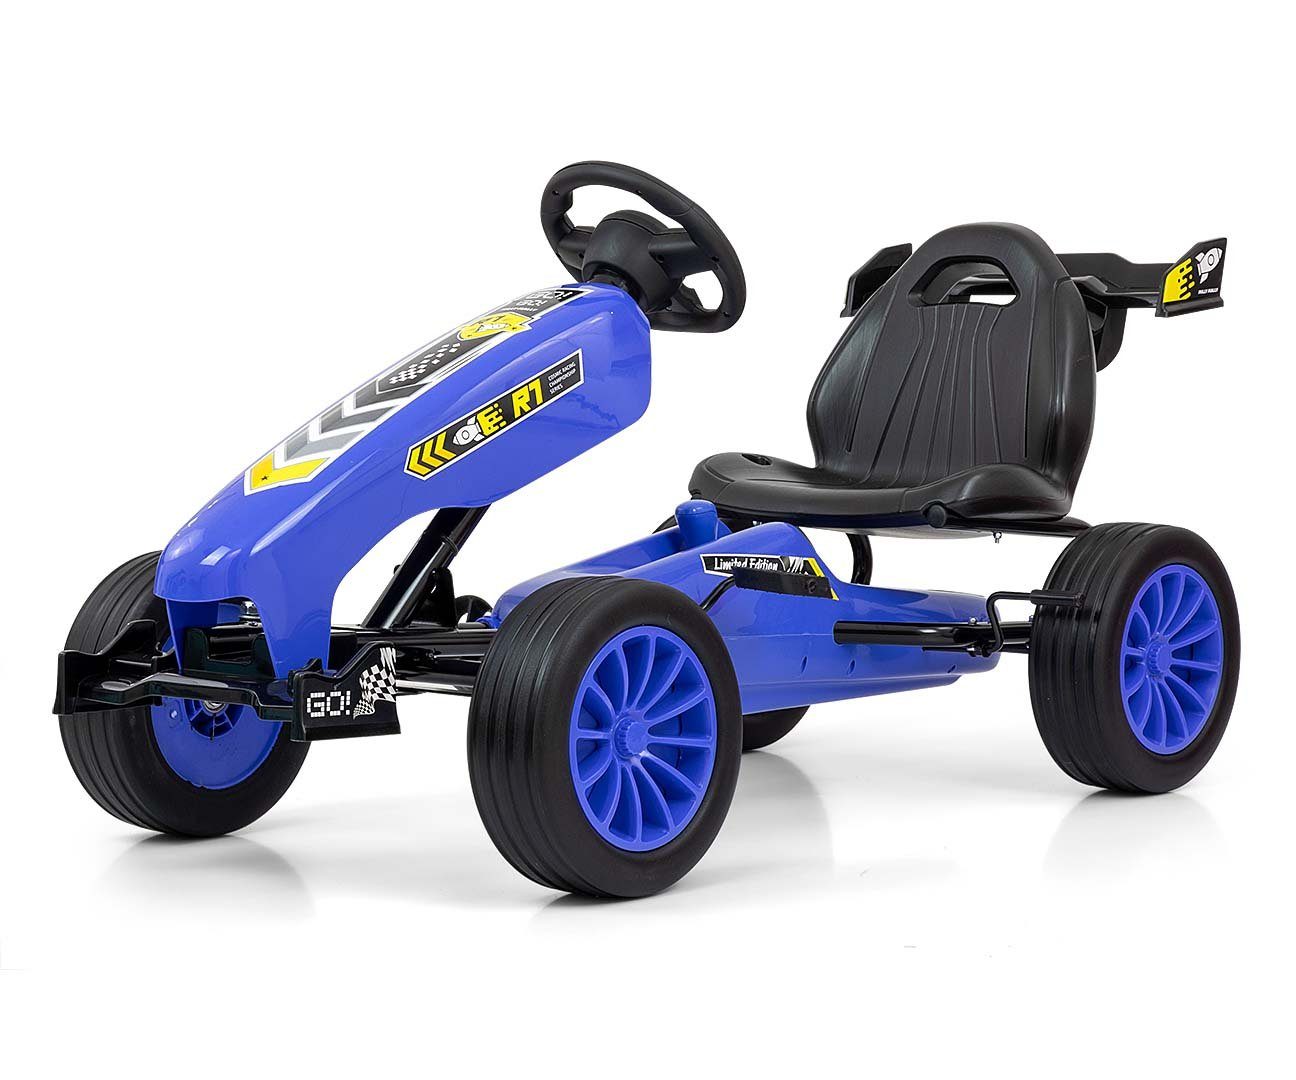 LeNoSa Go-Kart Pedalfahrzeug mit Handbremse verstellbarem Sitz • Freilauf-Funktion, Vorwärts-Rückwärtsgang